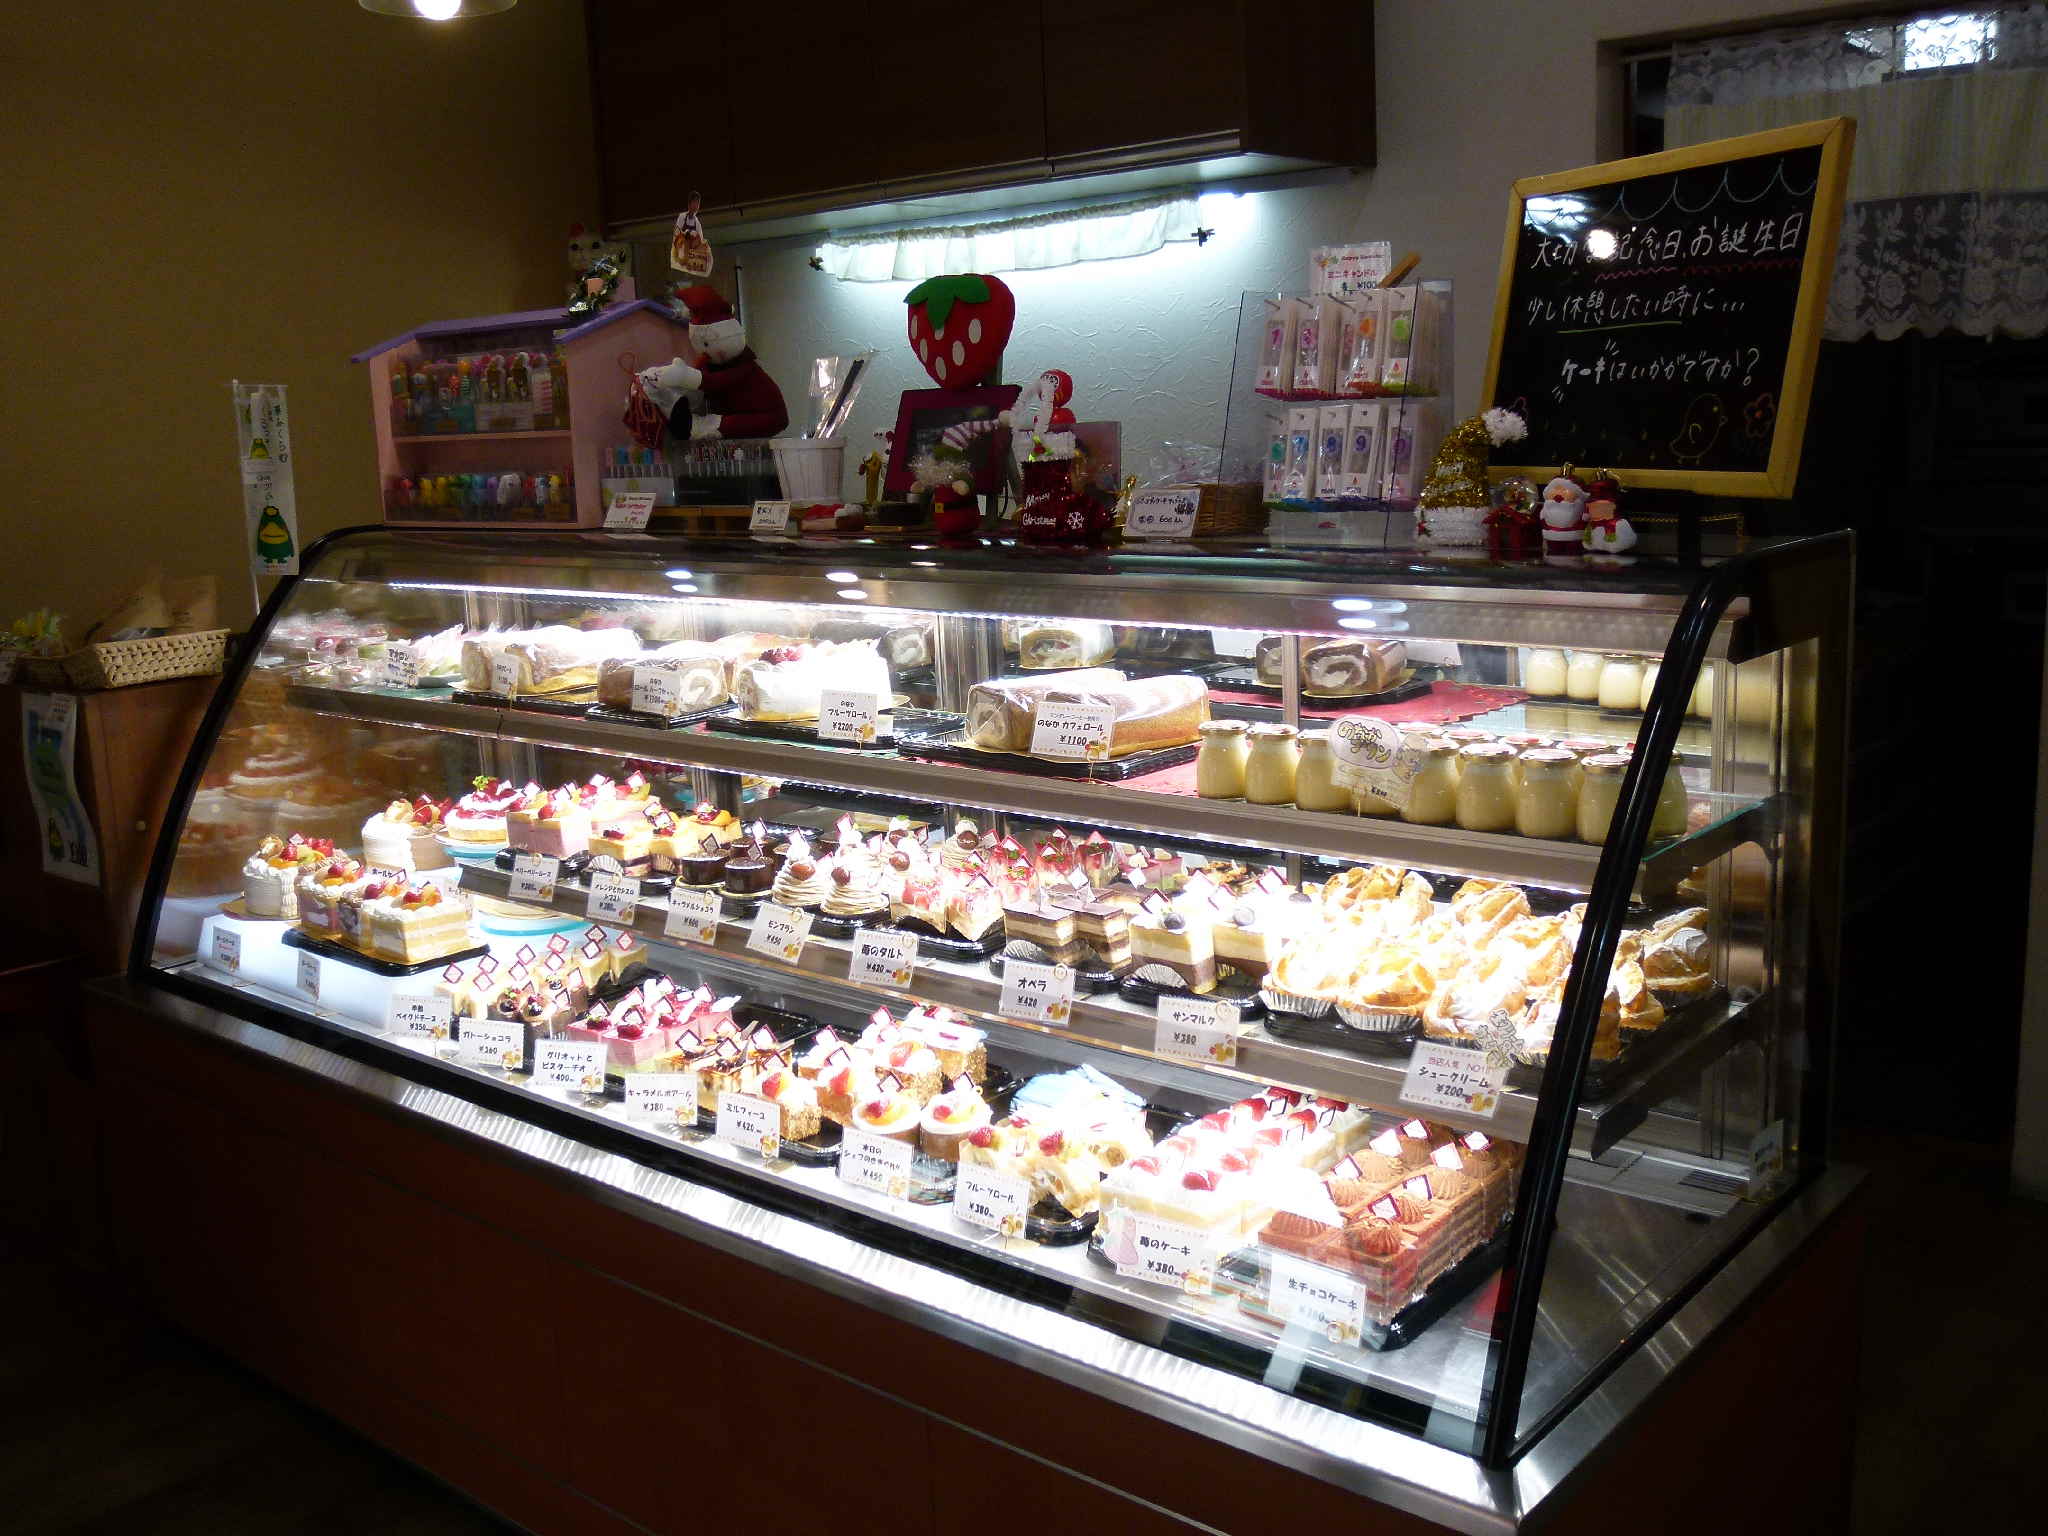 菓子工房プティフール公式サイト 福岡県久留米市 こだわりの素材を贅沢に使用 無添加 ケーキ 焼き菓子 プリン ギフト多数揃っています